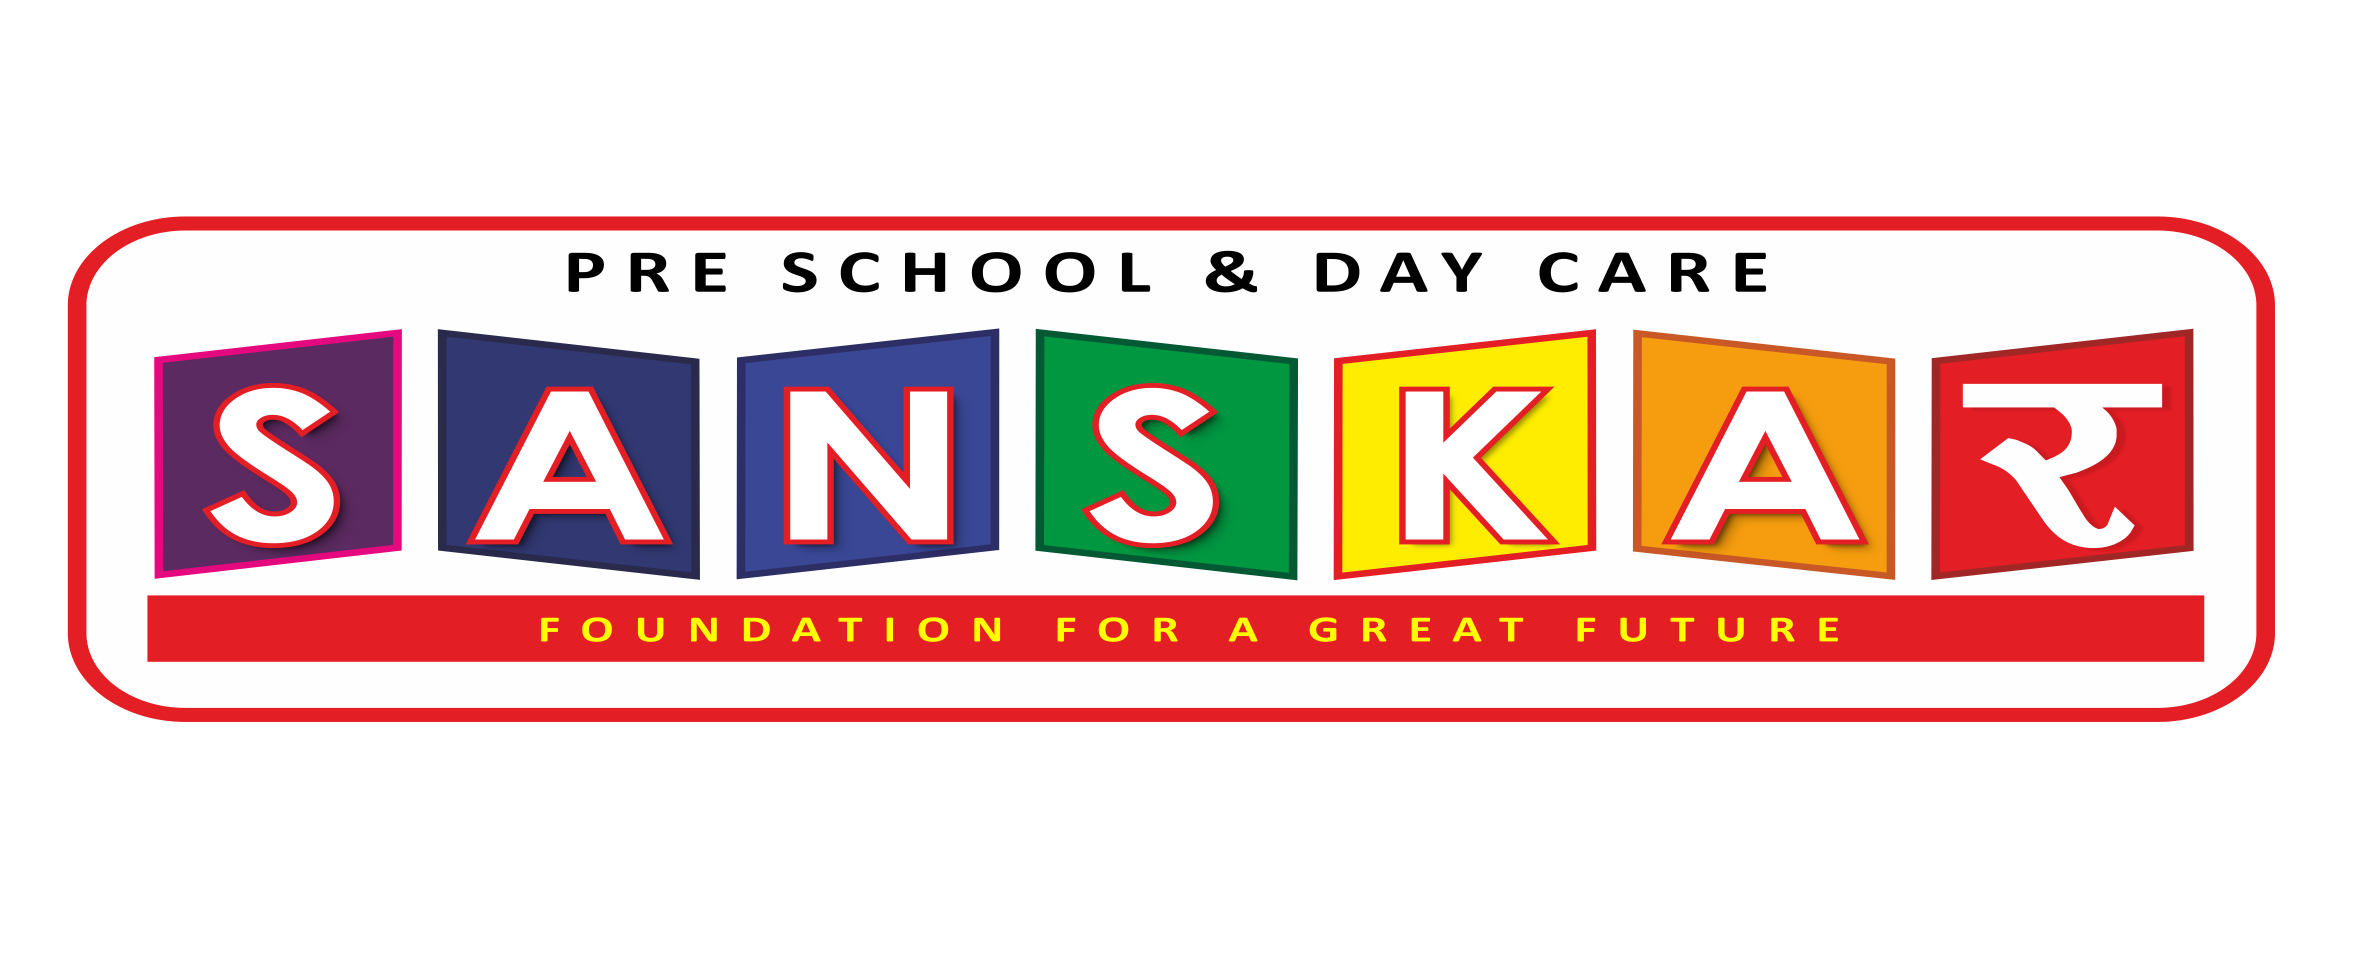 Sanskar Pre School & Day Care